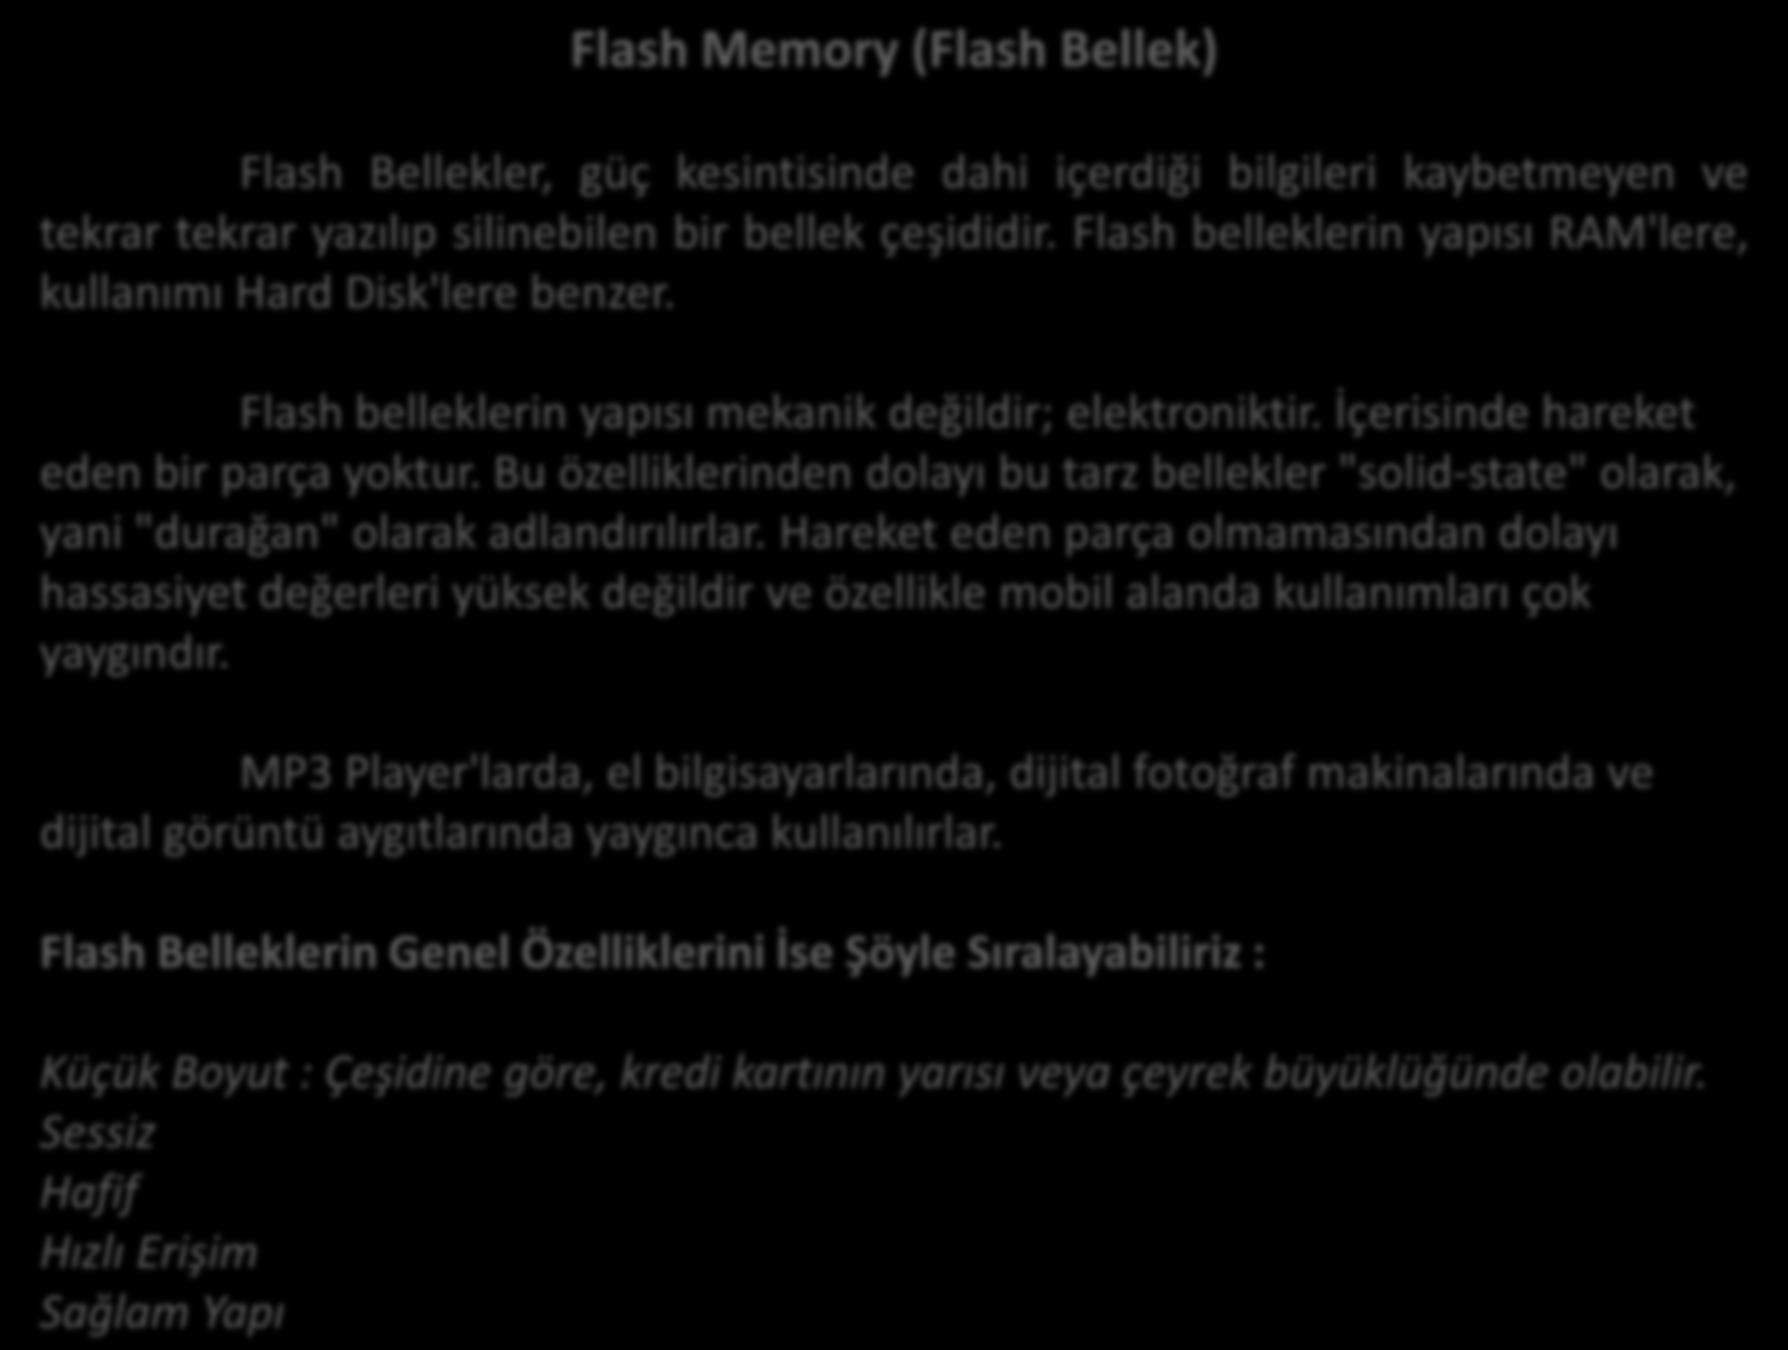 Flash Memory (Flash Bellek) Flash Bellekler, güç kesintisinde dahi içerdiği bilgileri kaybetmeyen ve tekrar tekrar yazılıp silinebilen bir bellek çeşididir.